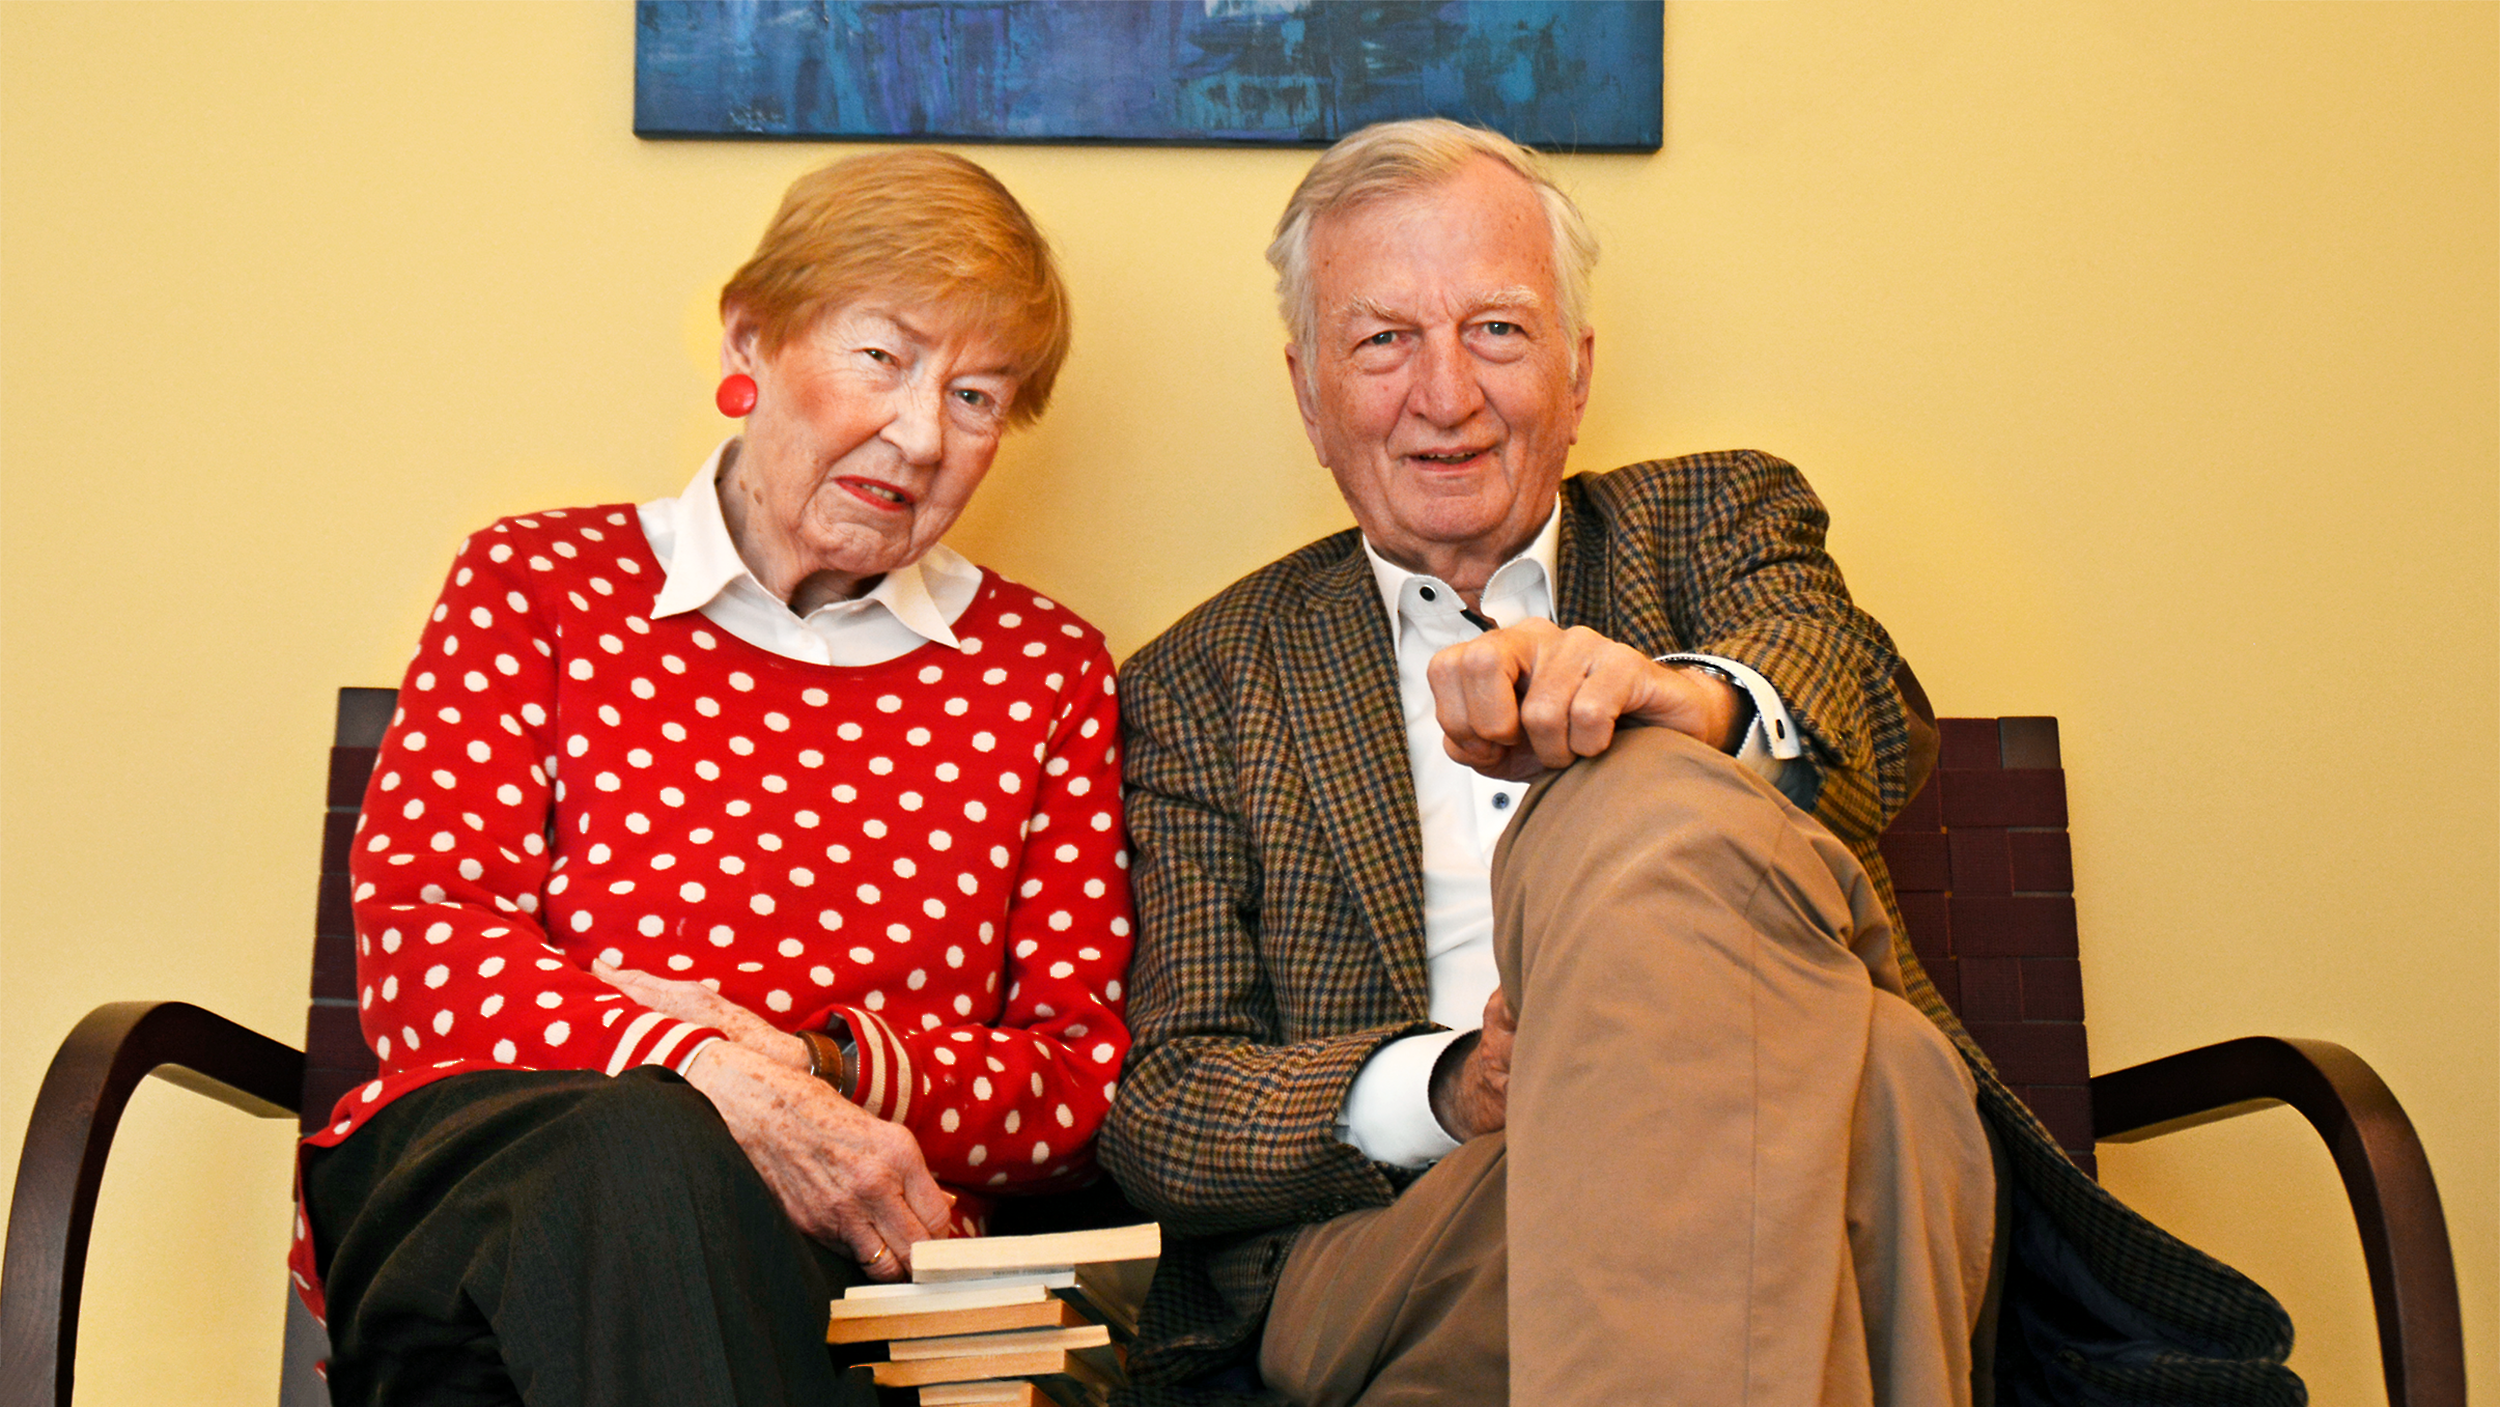 Foto: Hilke Dethlefs und Bernt Renzenbrink, ein Duo im fortgerückten Lebensalter, lächelnd auf einem Sofa sitzend vor einer gelben Wand